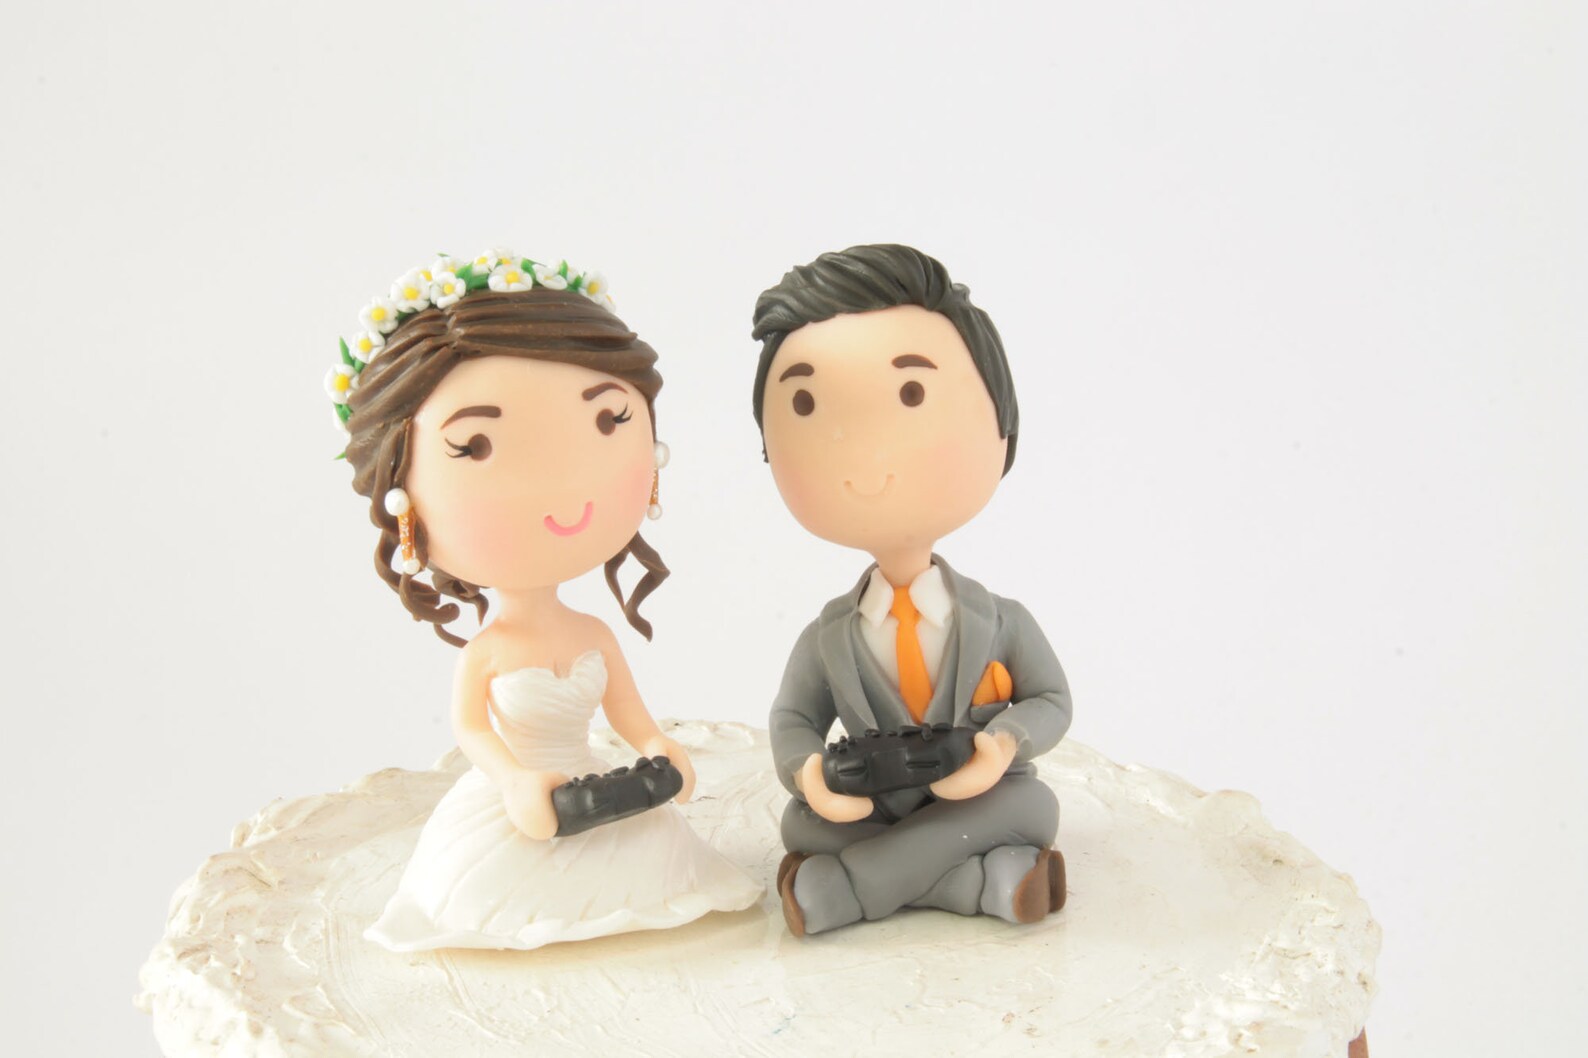 Gamer couple wedding cake topper